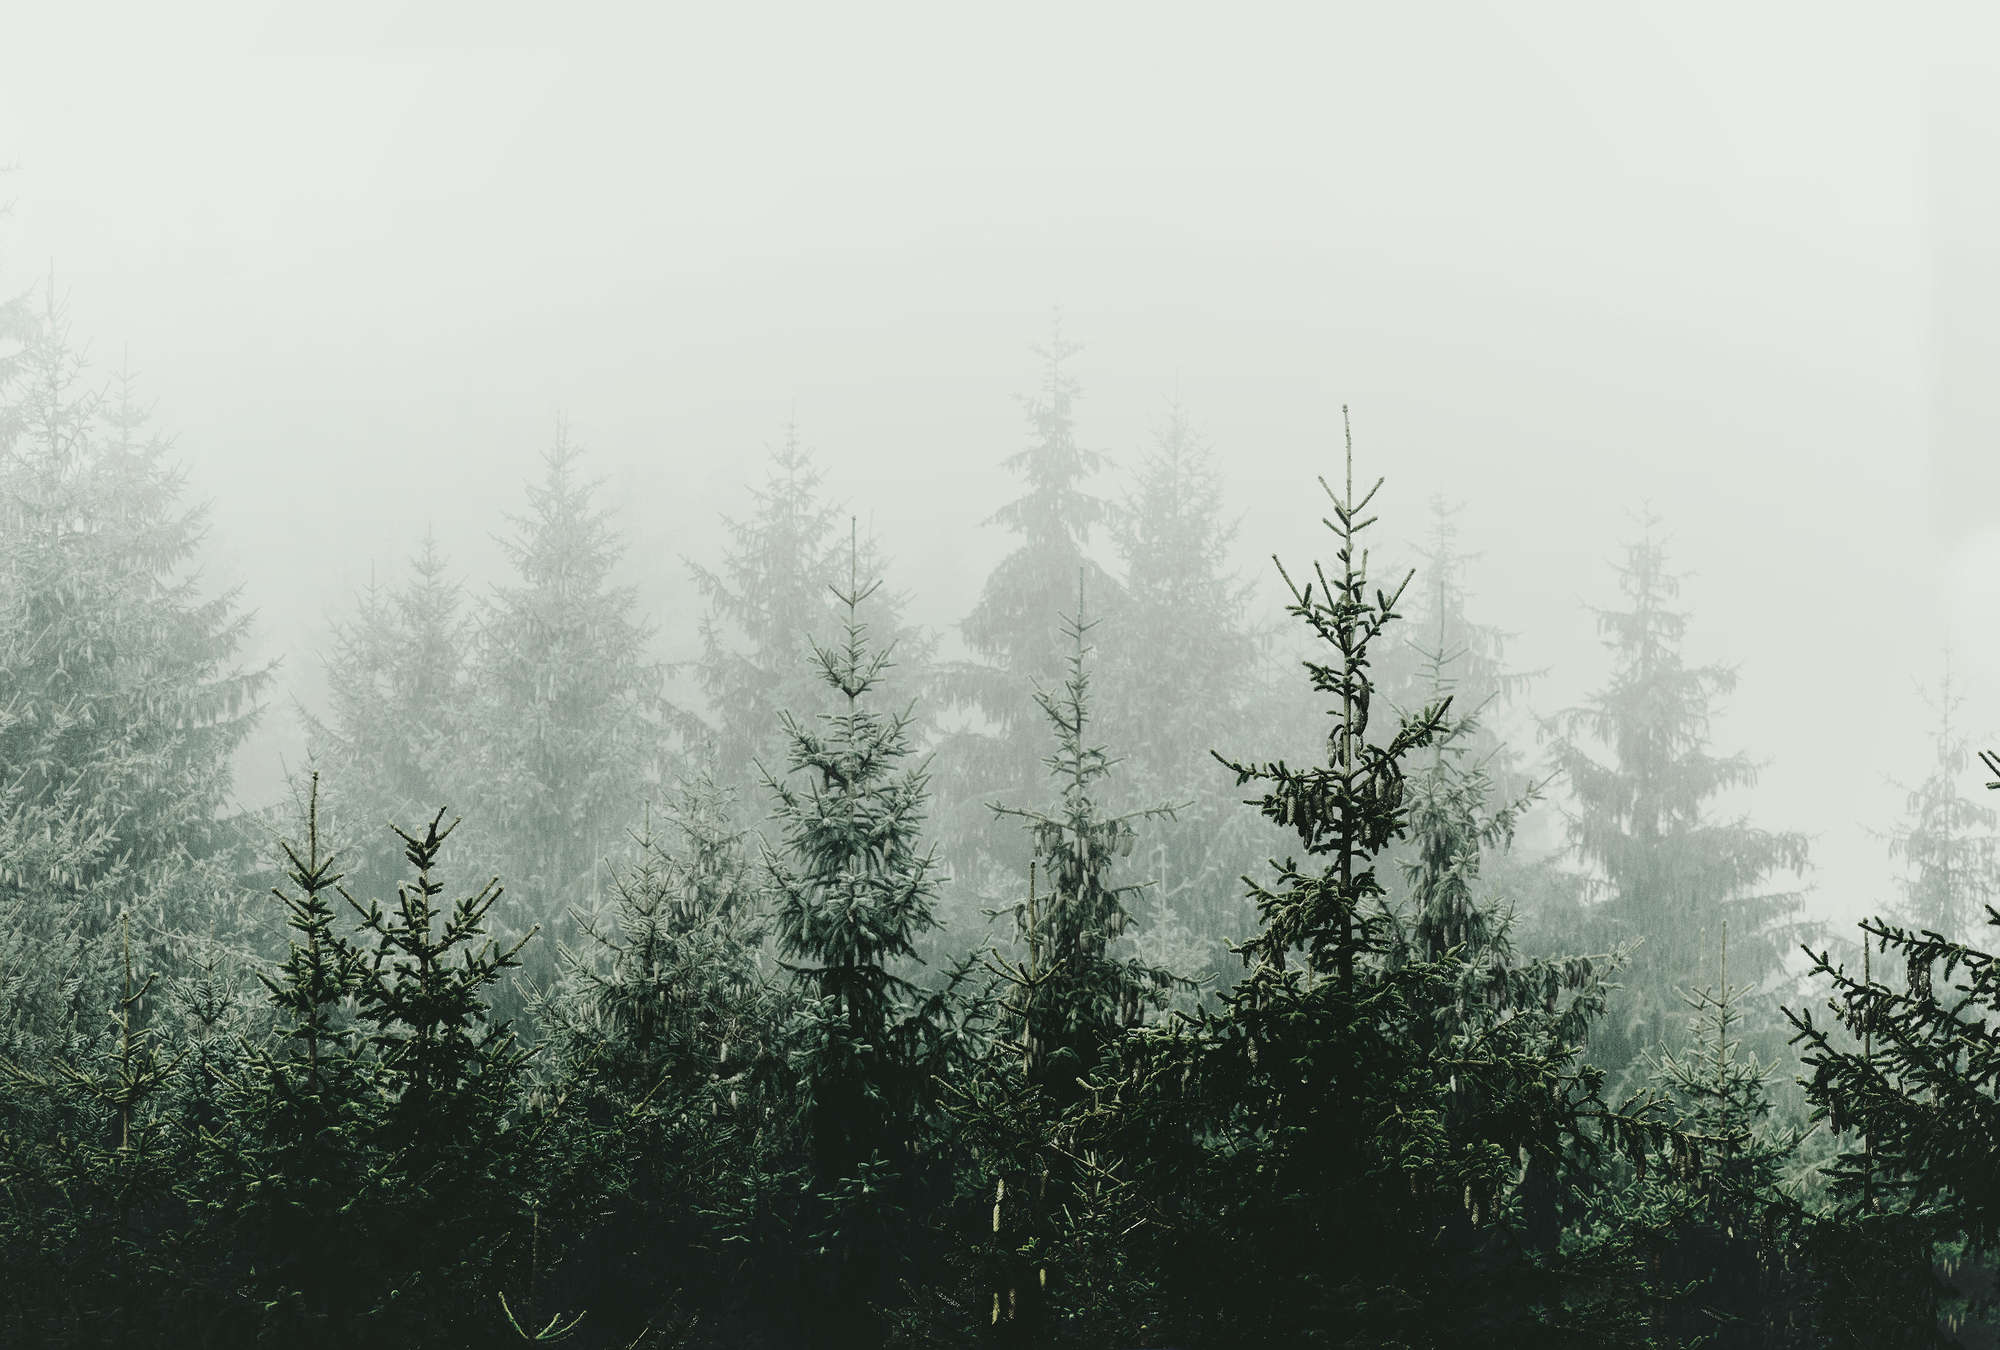             Foresta nella nebbia abeti sempreverdi murale
        